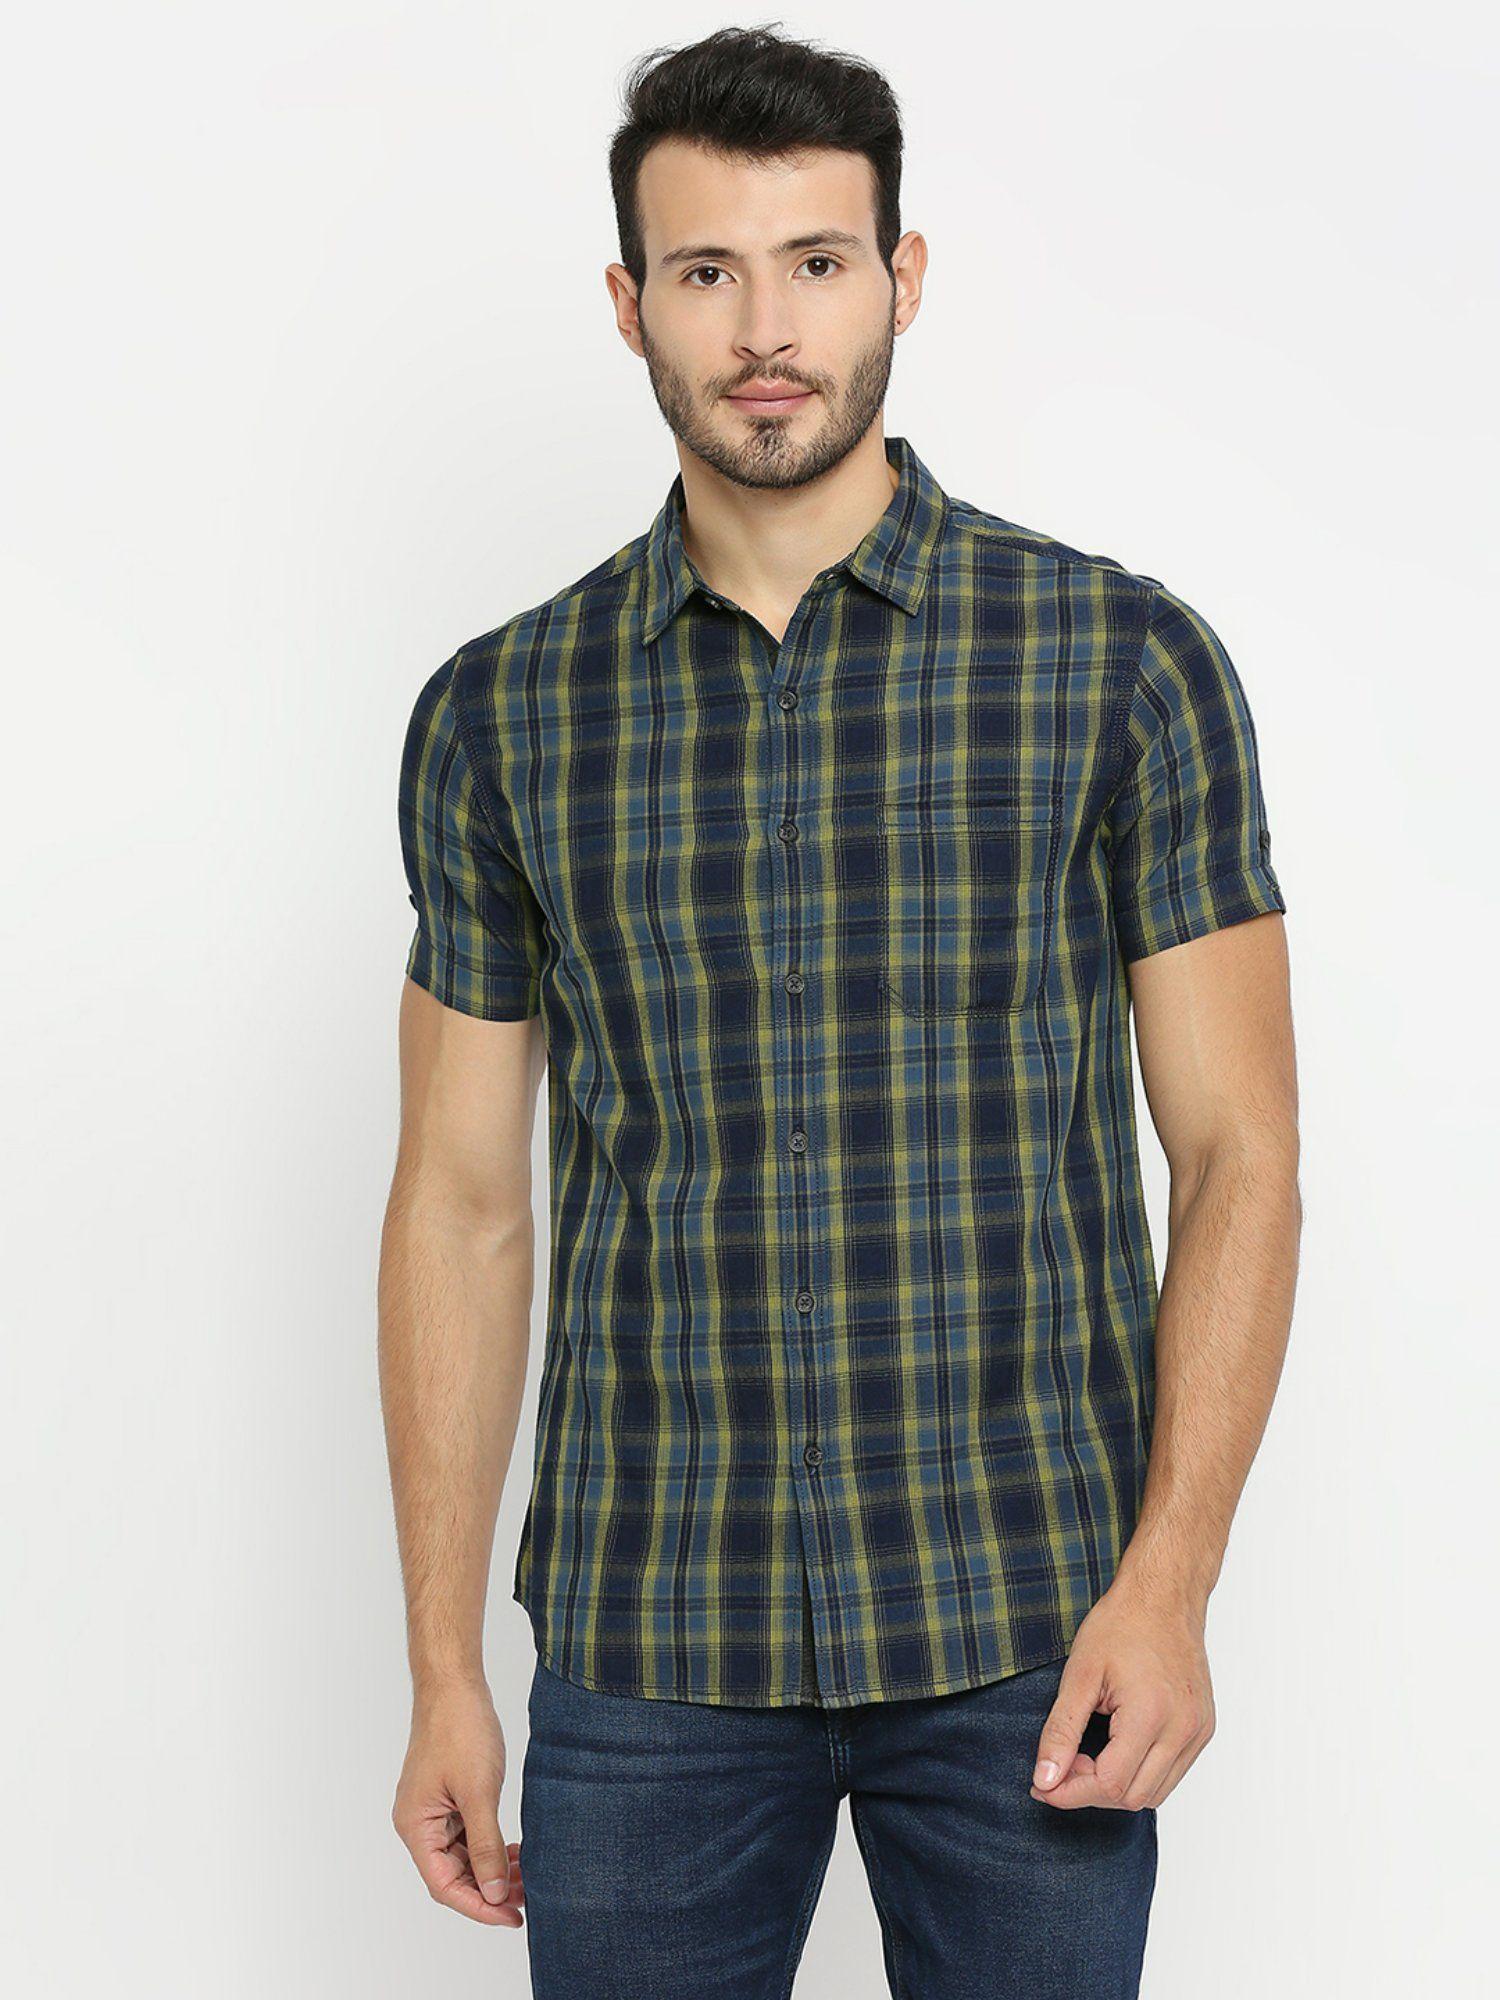 pista green cotton half sleeve checks shirt for men